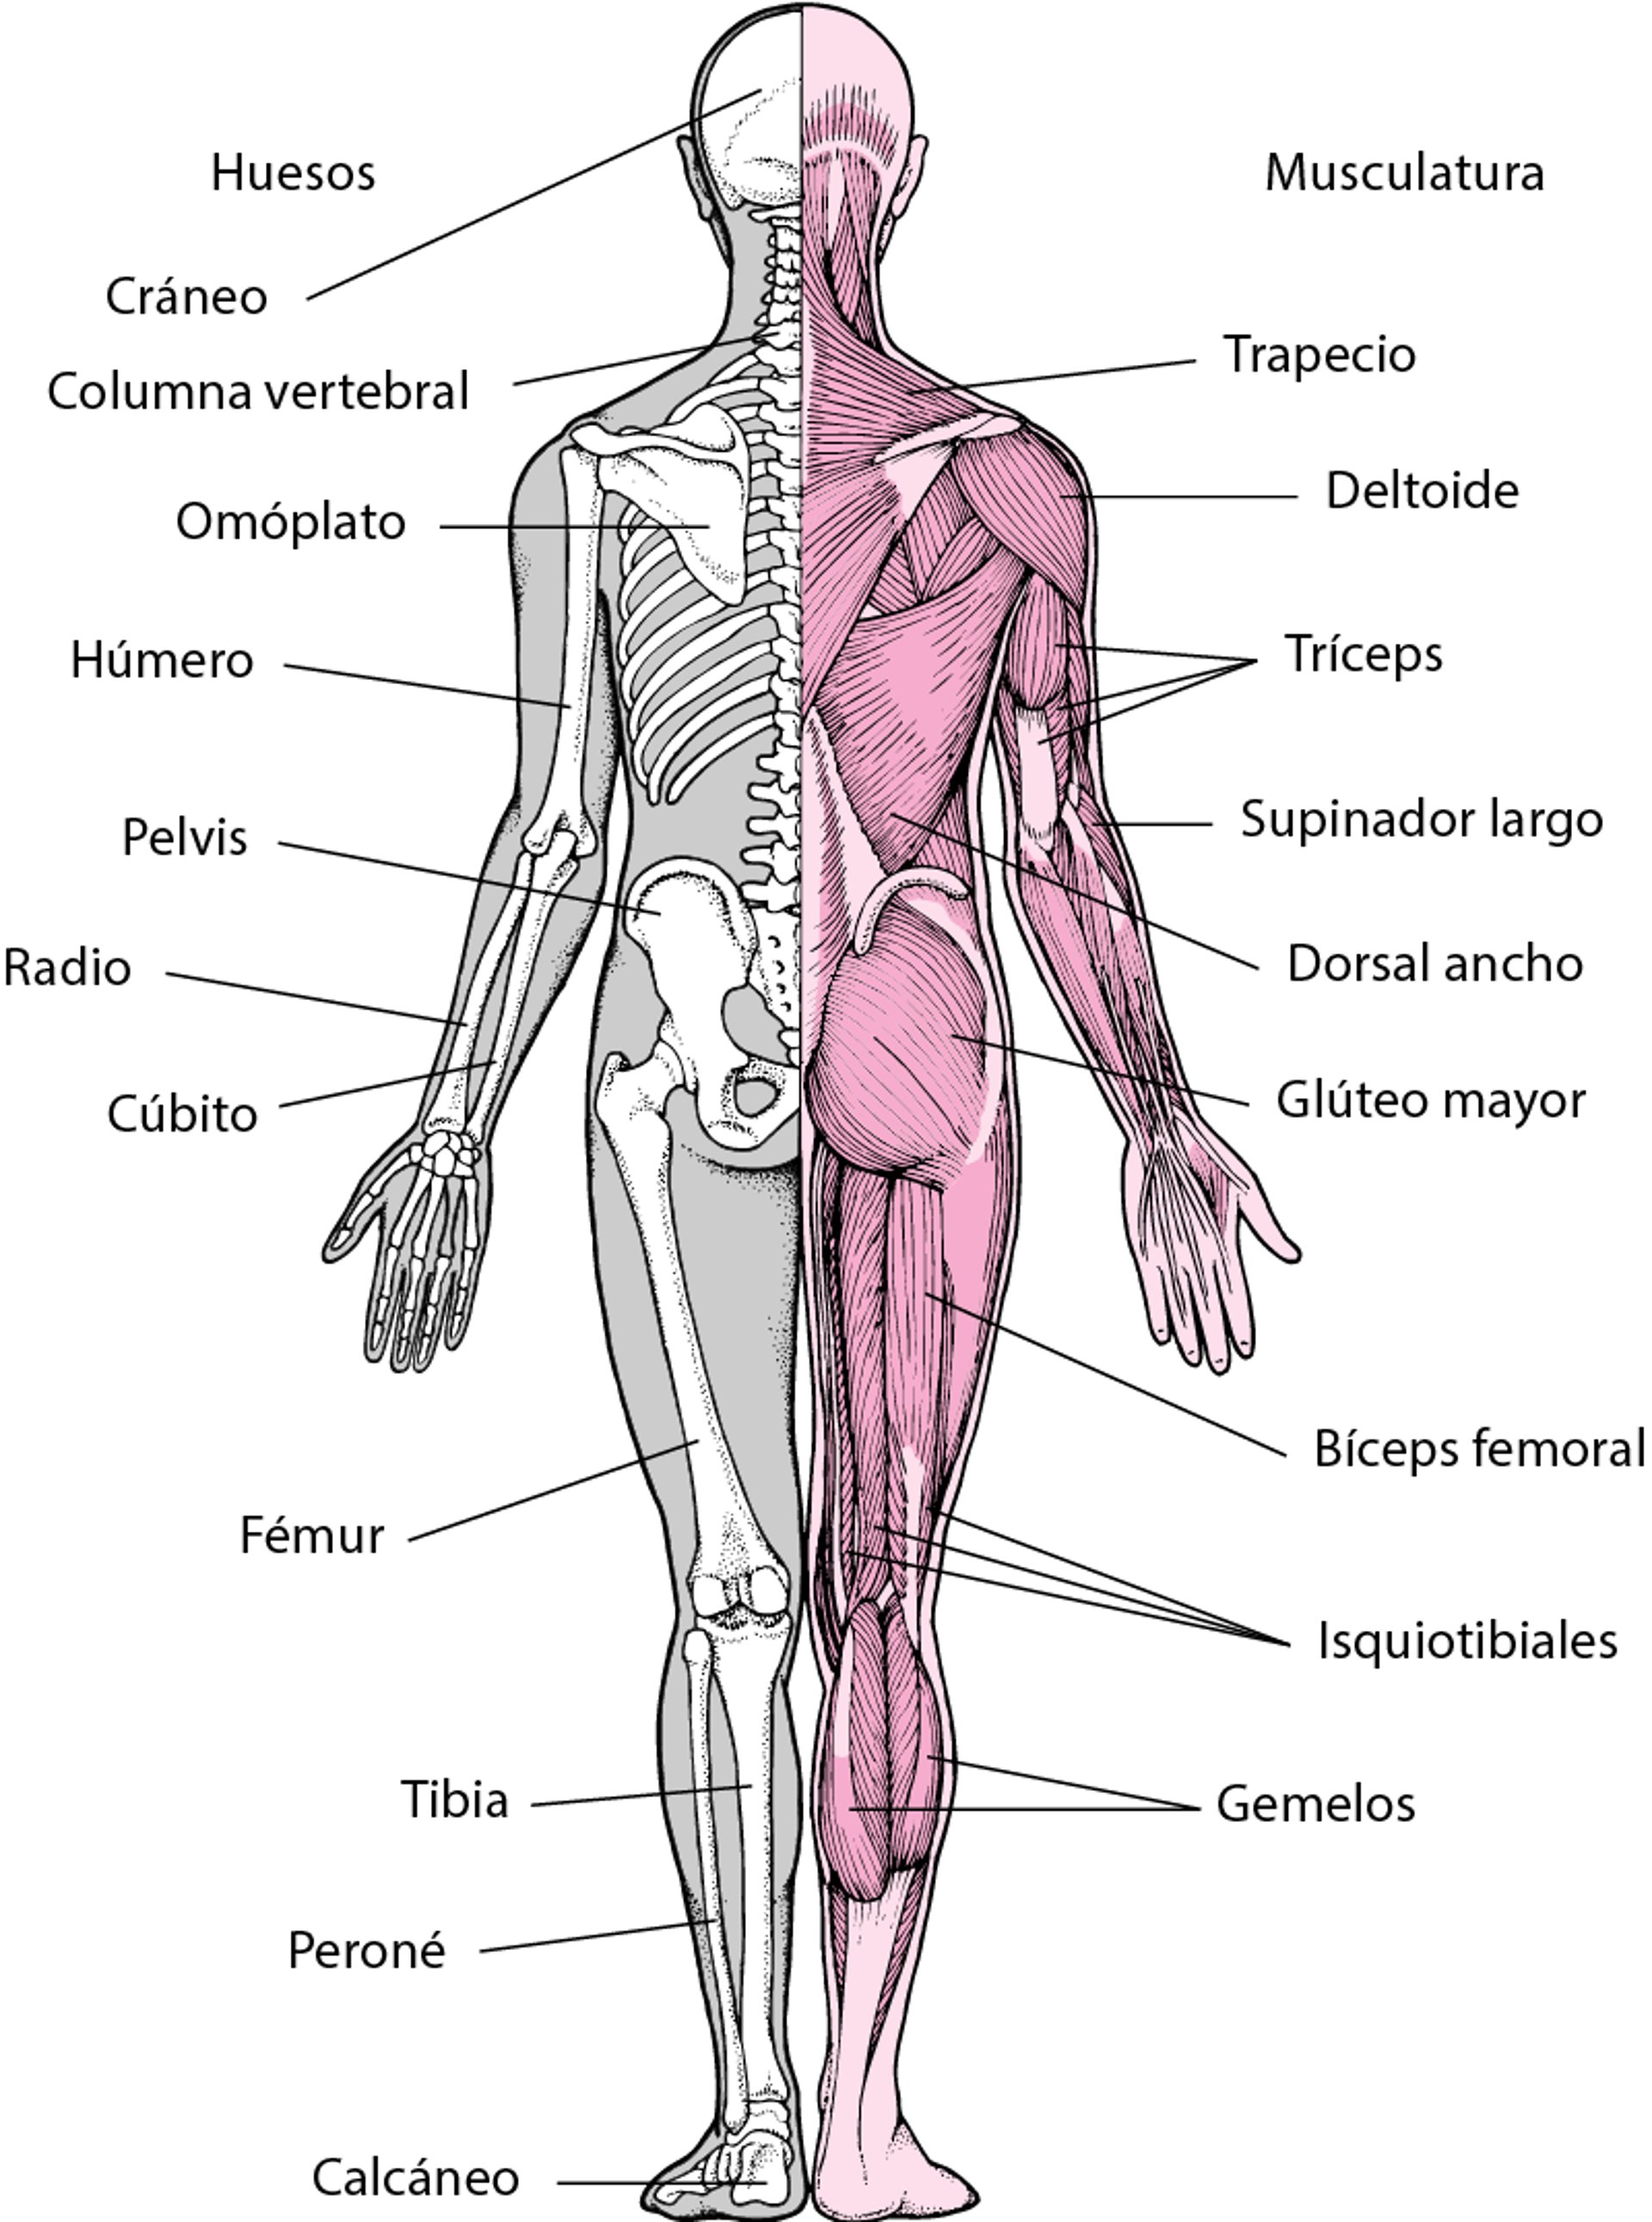 Sistema musculoesquelético (2)